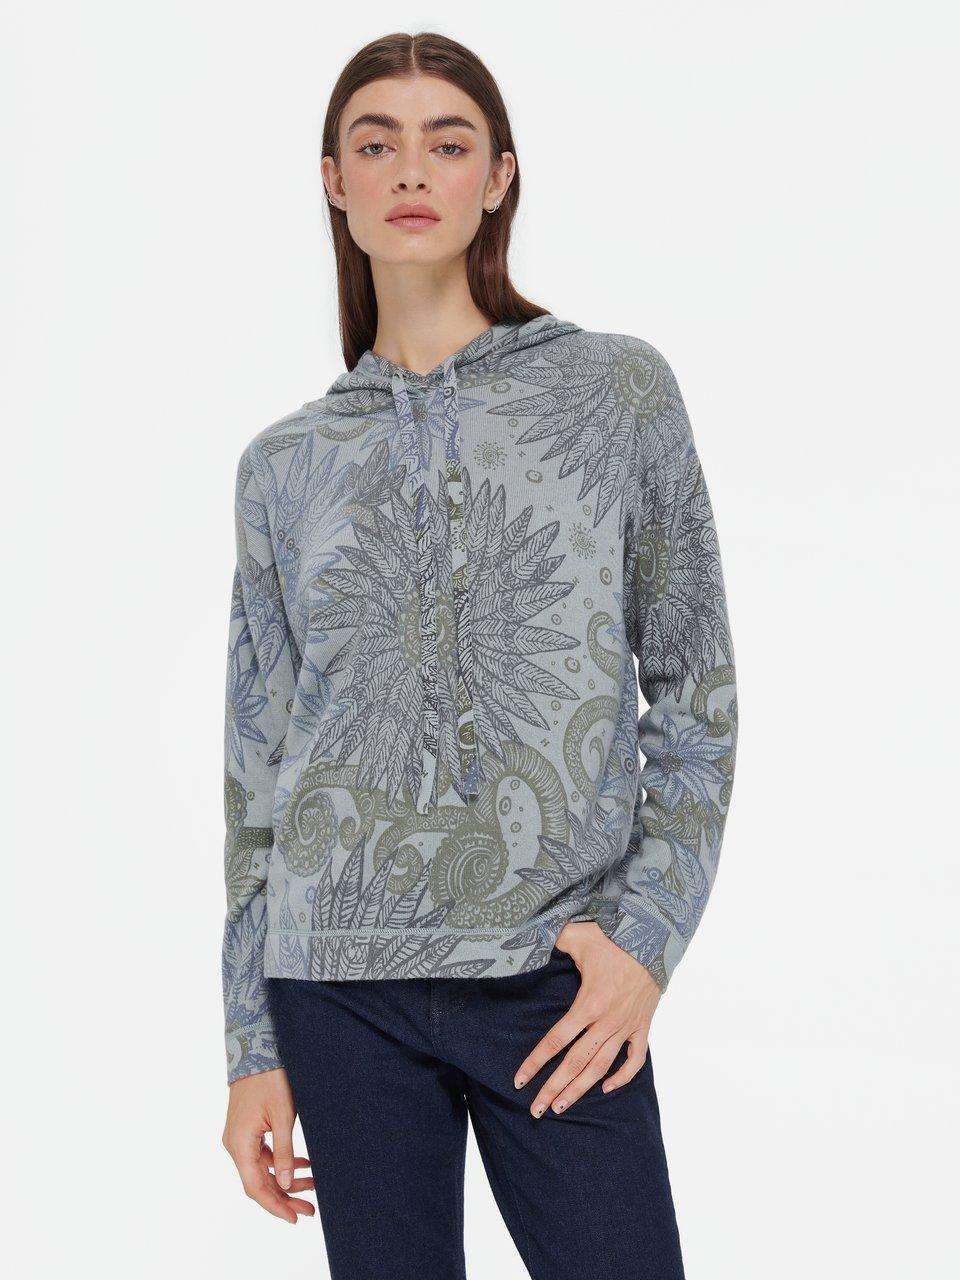 Кашемировый свитер с цветочным узором по всей поверхности.